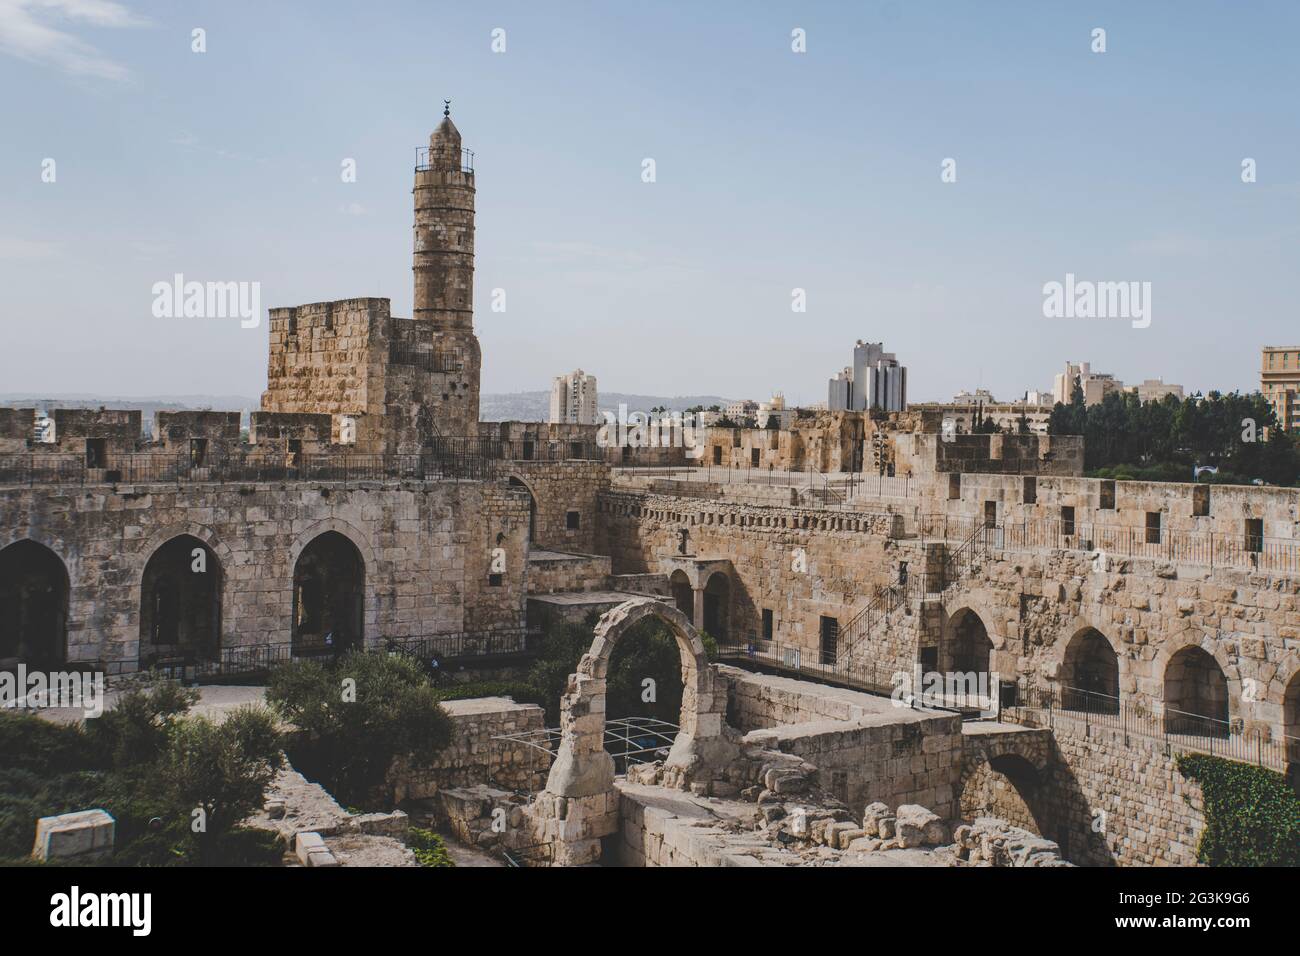 Cerca de la Torre de David y de las murallas de la ciudad vieja de Jerusalén contra el cielo despejado. Antigua ciudadela judía a la entrada de la ciudad vieja de Je Foto de stock